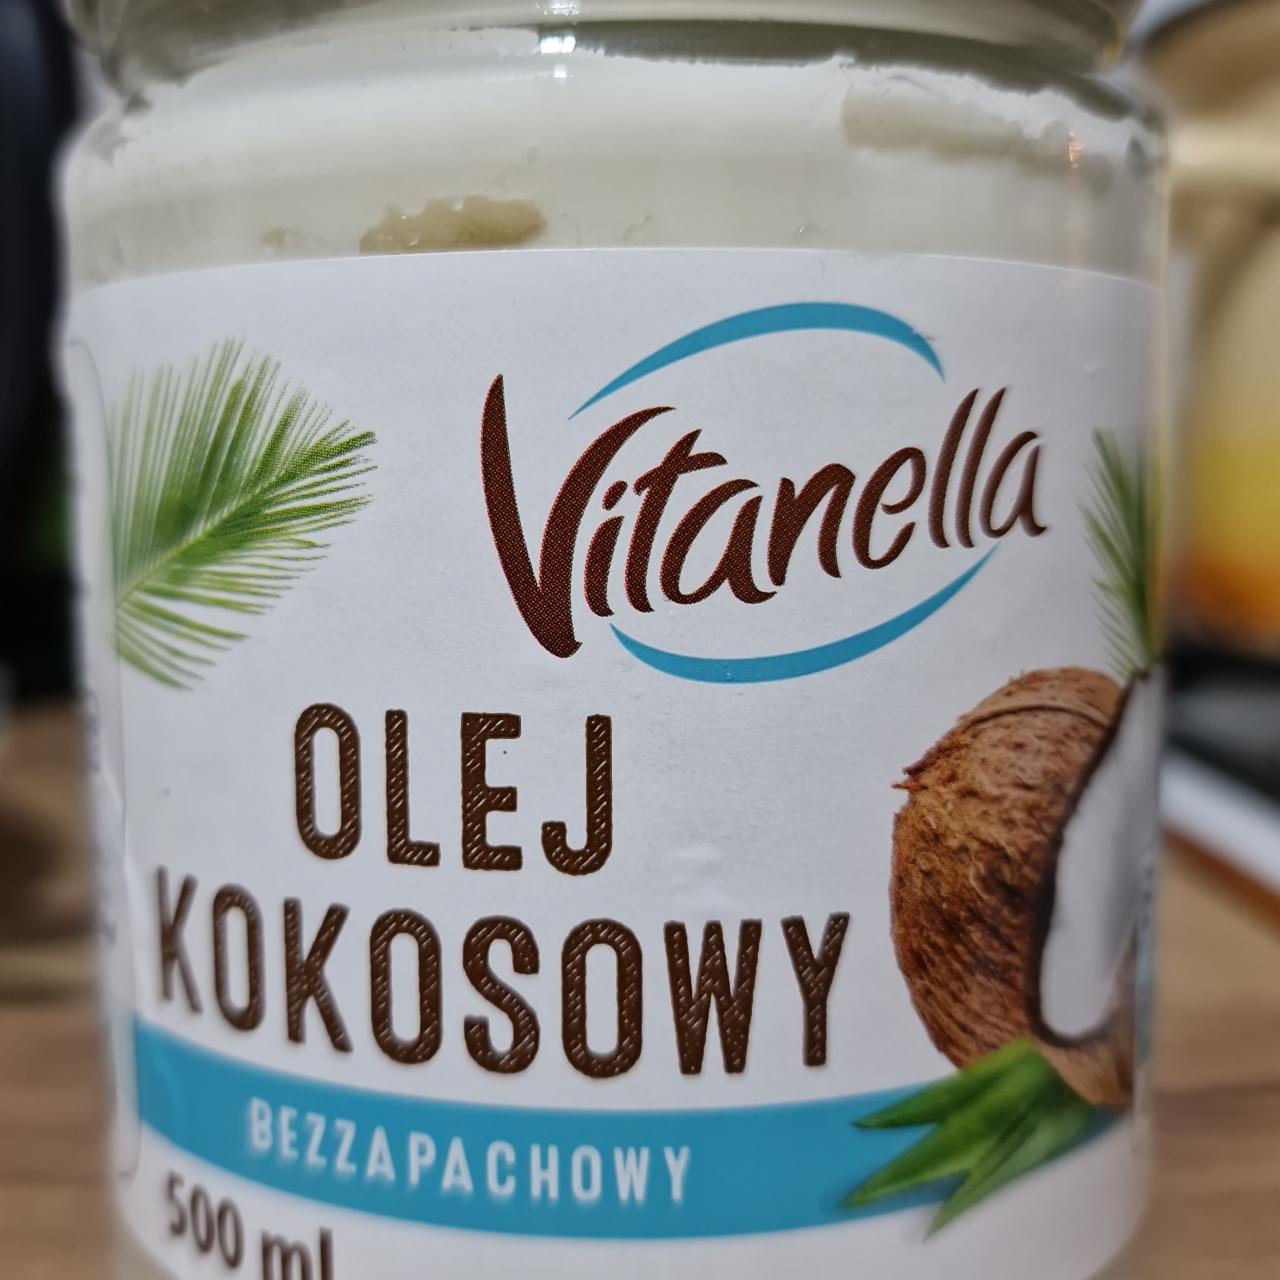 Zdjęcia - olej kokosowy bezzapachowy Vitanella